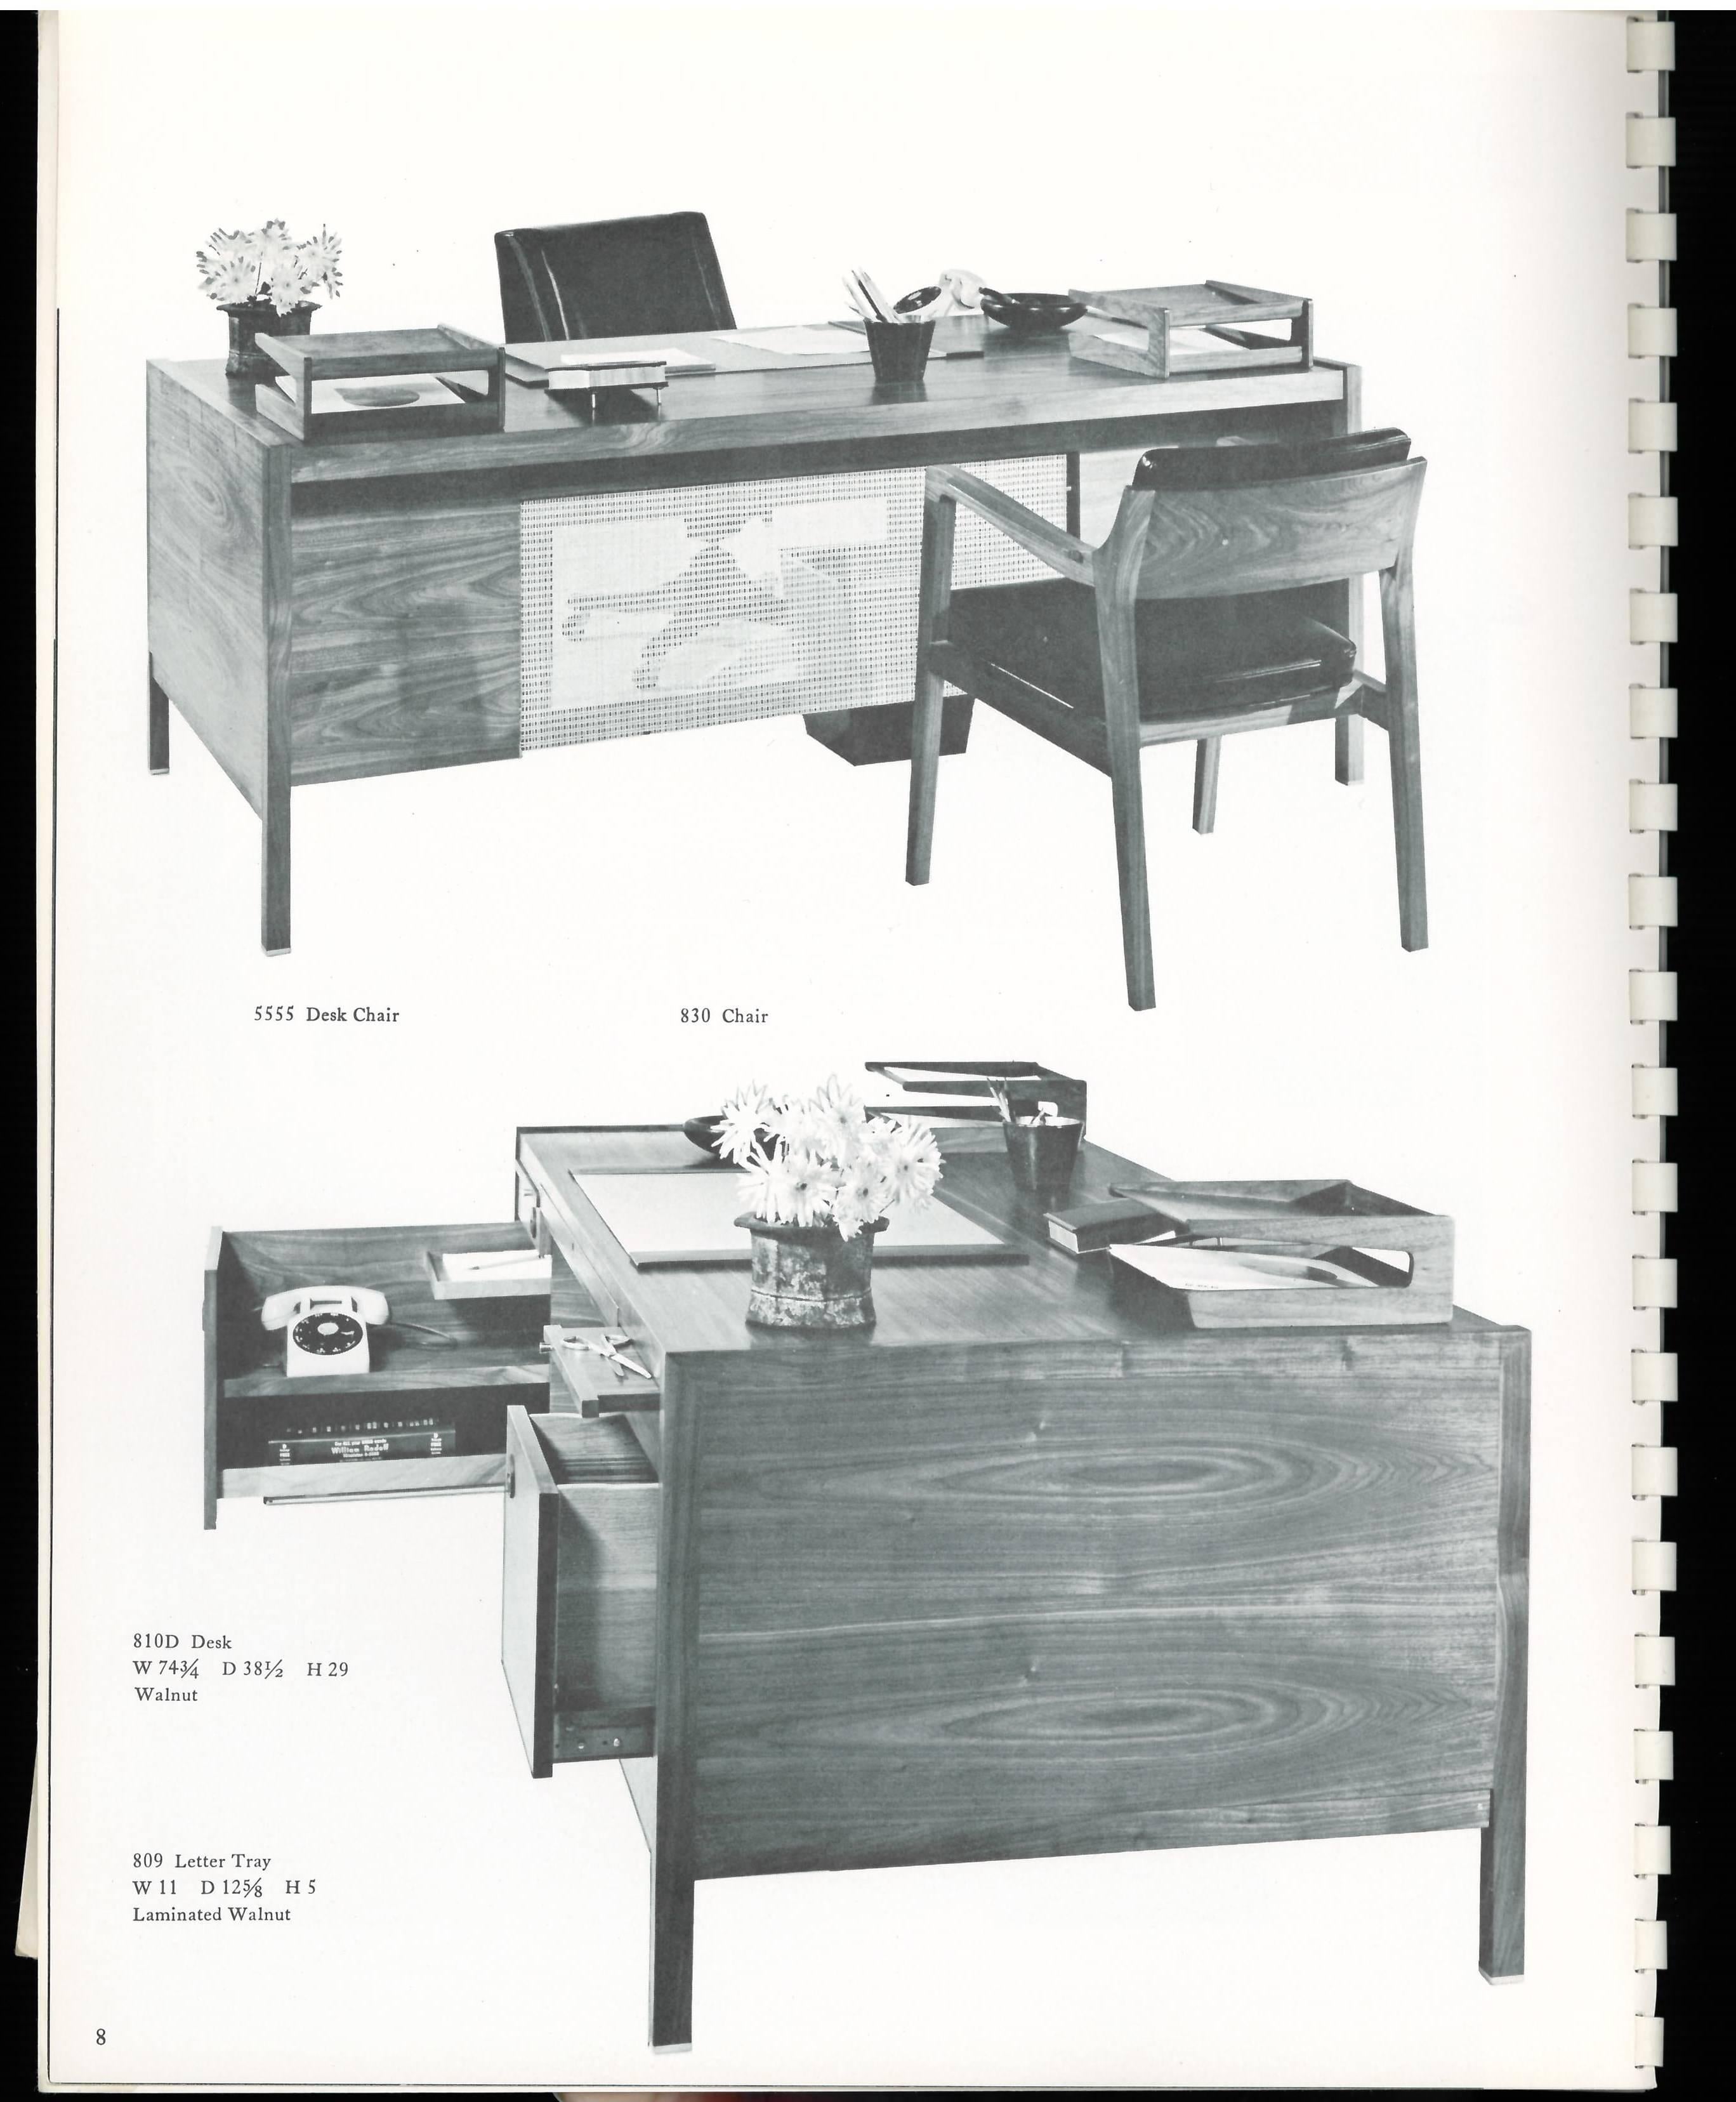 Dieser 1959 produzierte Katalog mit sortierten Einbänden stellte die damals neue Dunbar Executive Office Collection